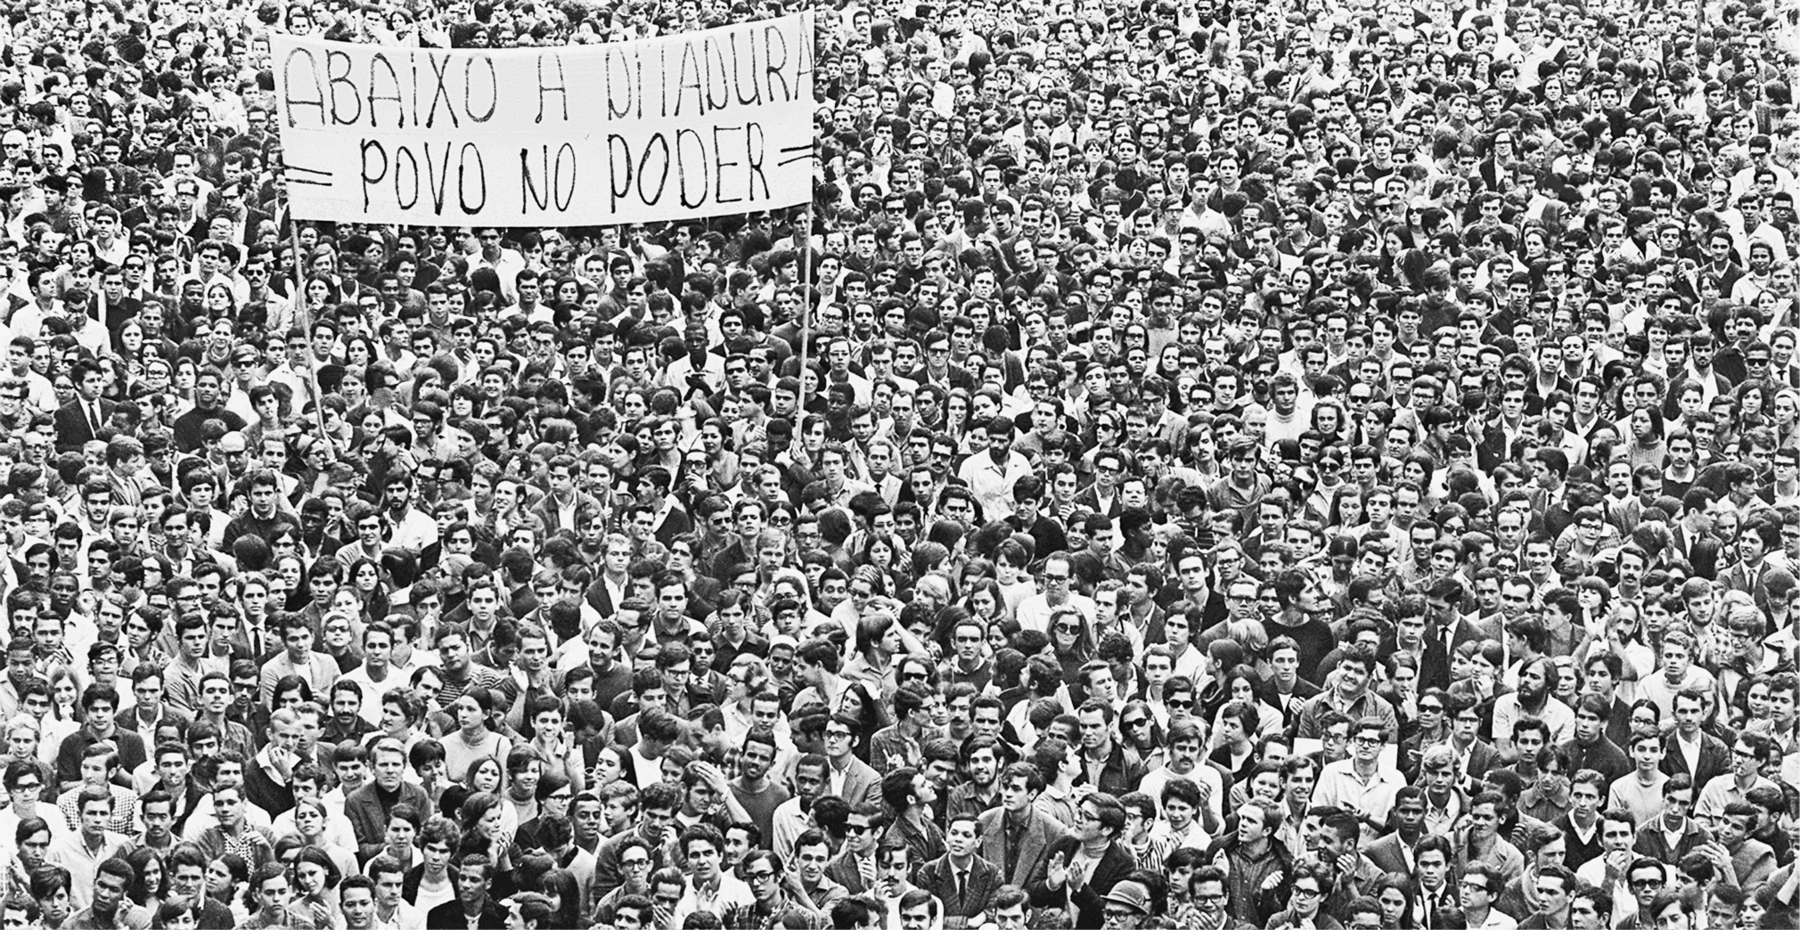 Fotografia em preto e branco. Multidão em uma passeata, carregando um cartaz com a frase: ABAIXO A DITADURA – POVO NO PODER.